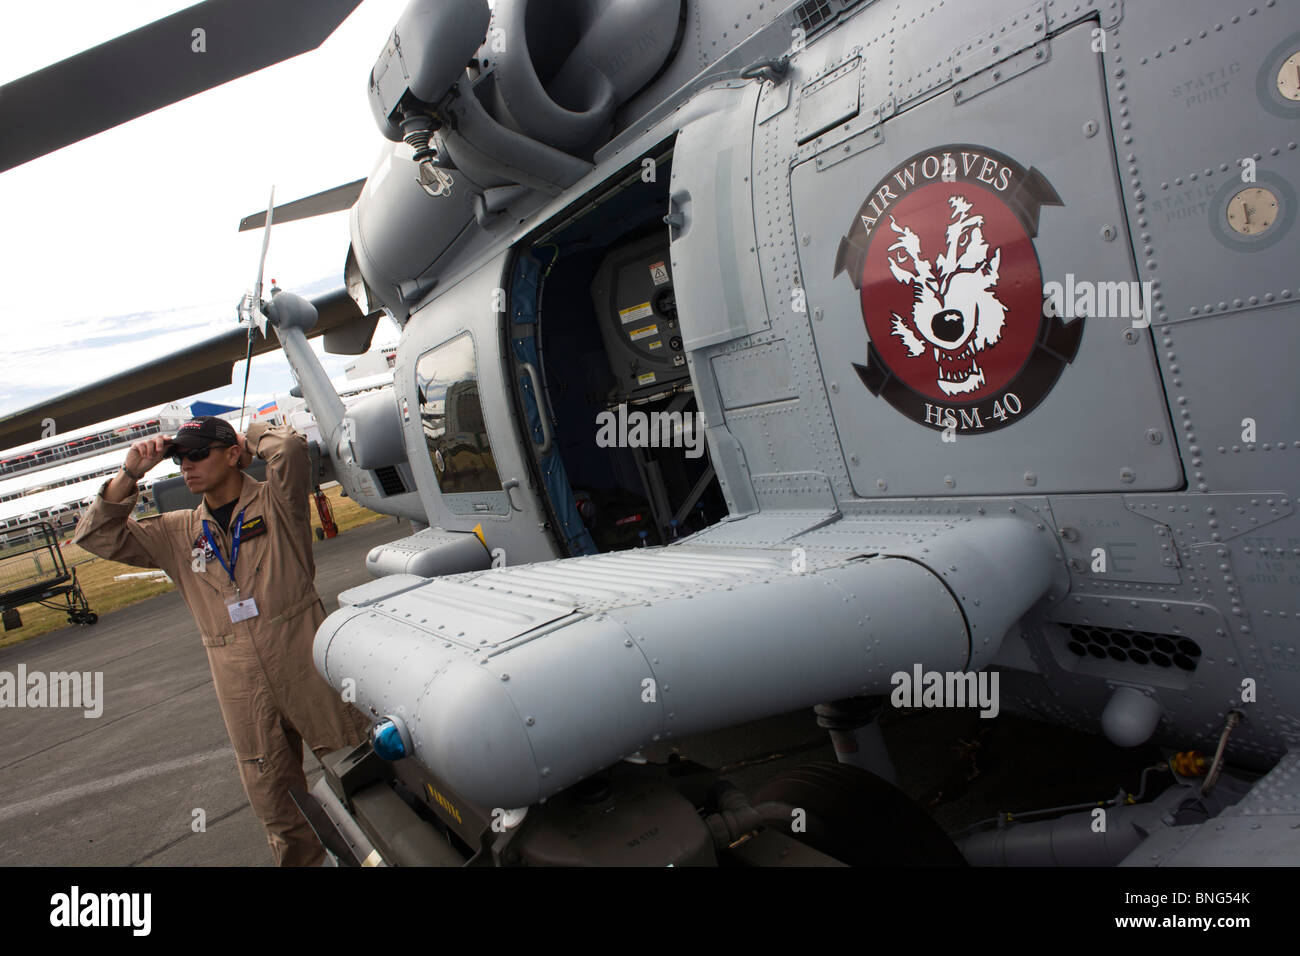 US Navy Piloten und seinem Sikorsky MH-60R Hubschrauber auf der Farnborough Airshow. Stockfoto